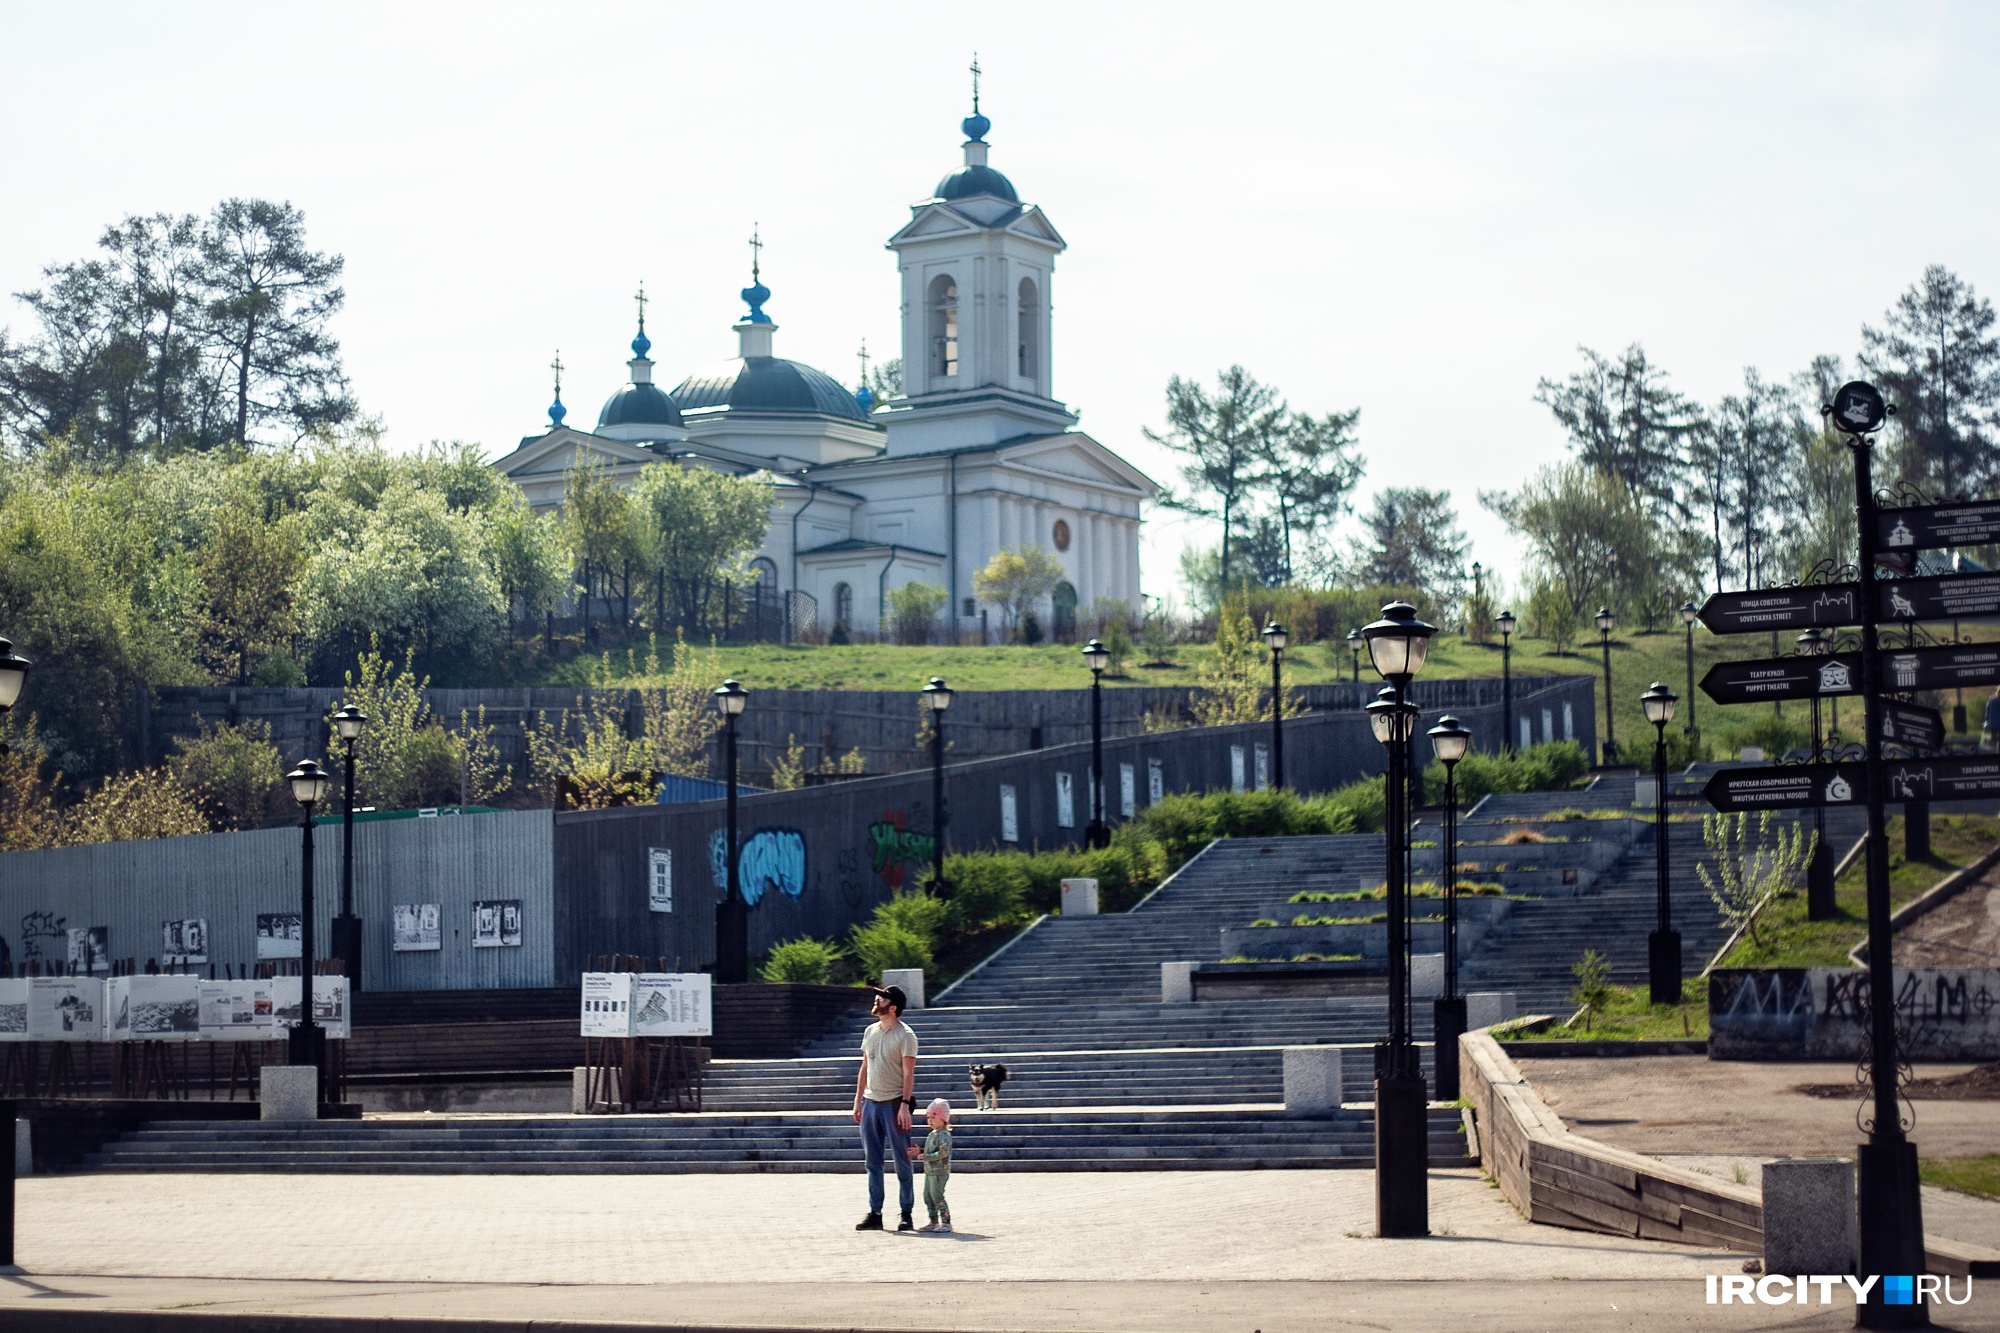 Проект «История в земле» о кладбищах и захоронениях стартует в Иркутске в августе